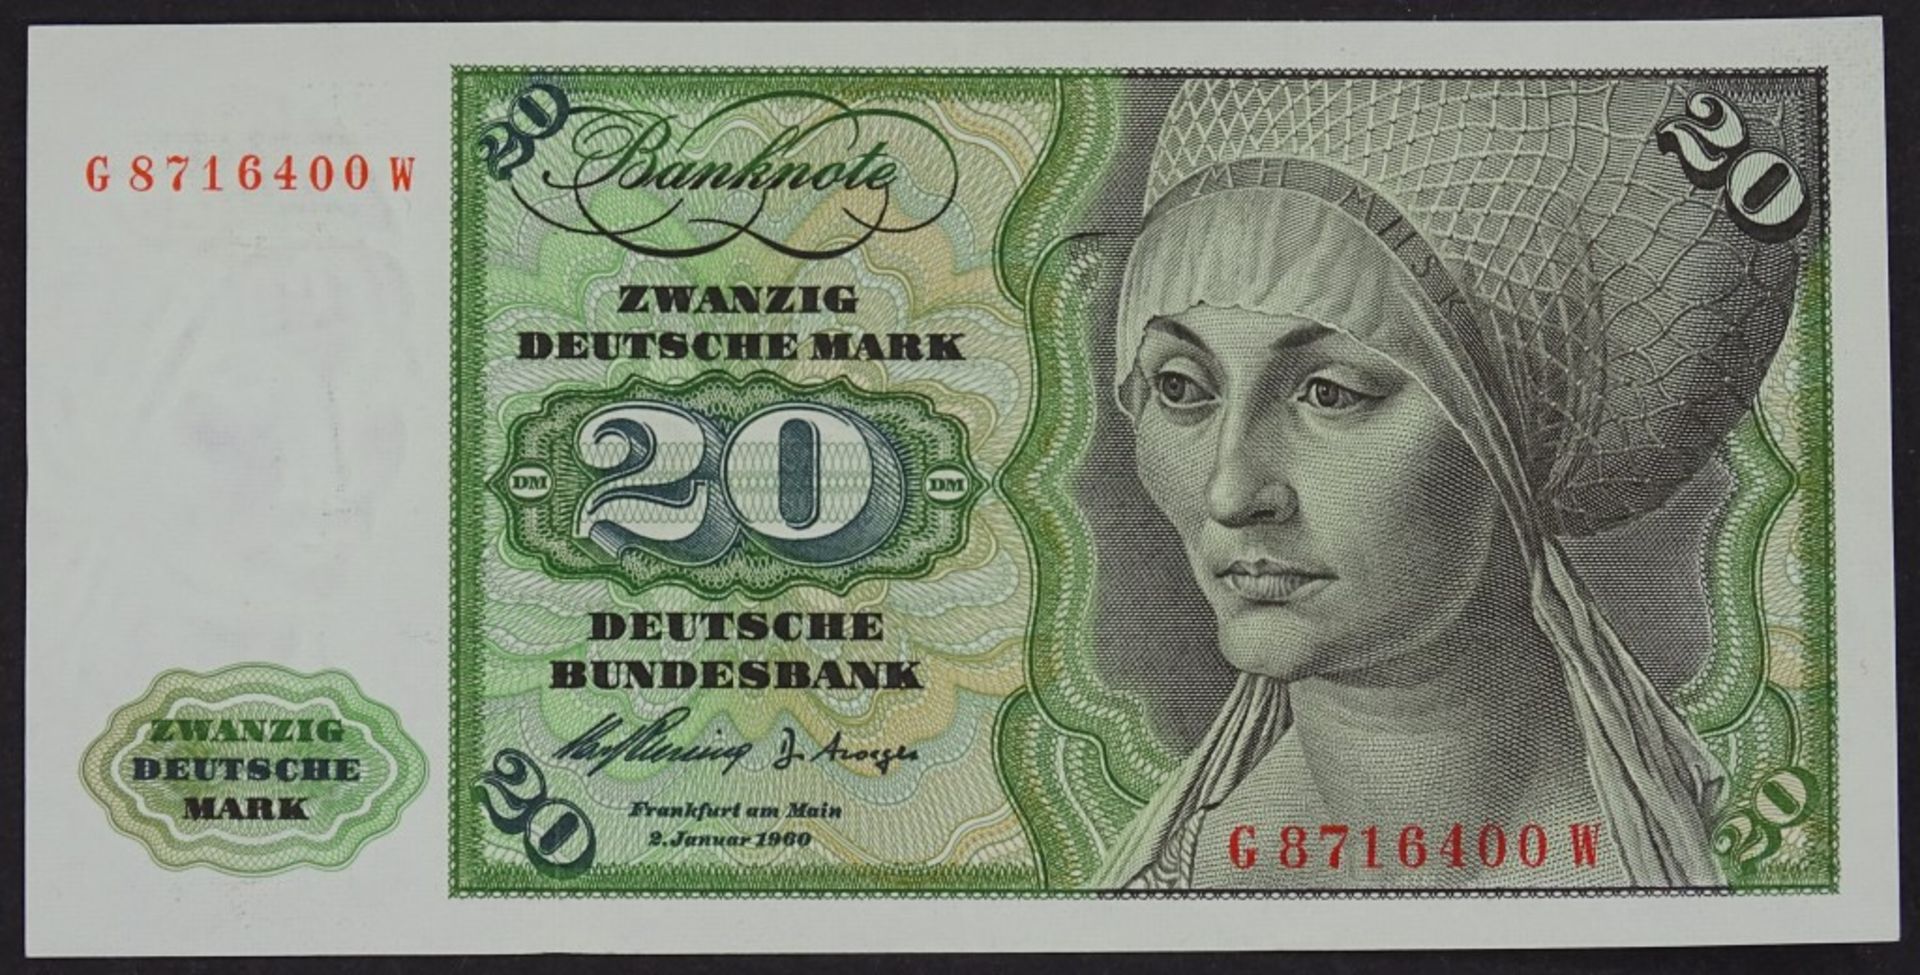 Banknote - 20 Deutsche Mark 1960- - -22.61 % buyer's premium on the hammer priceVAT margin scheme,